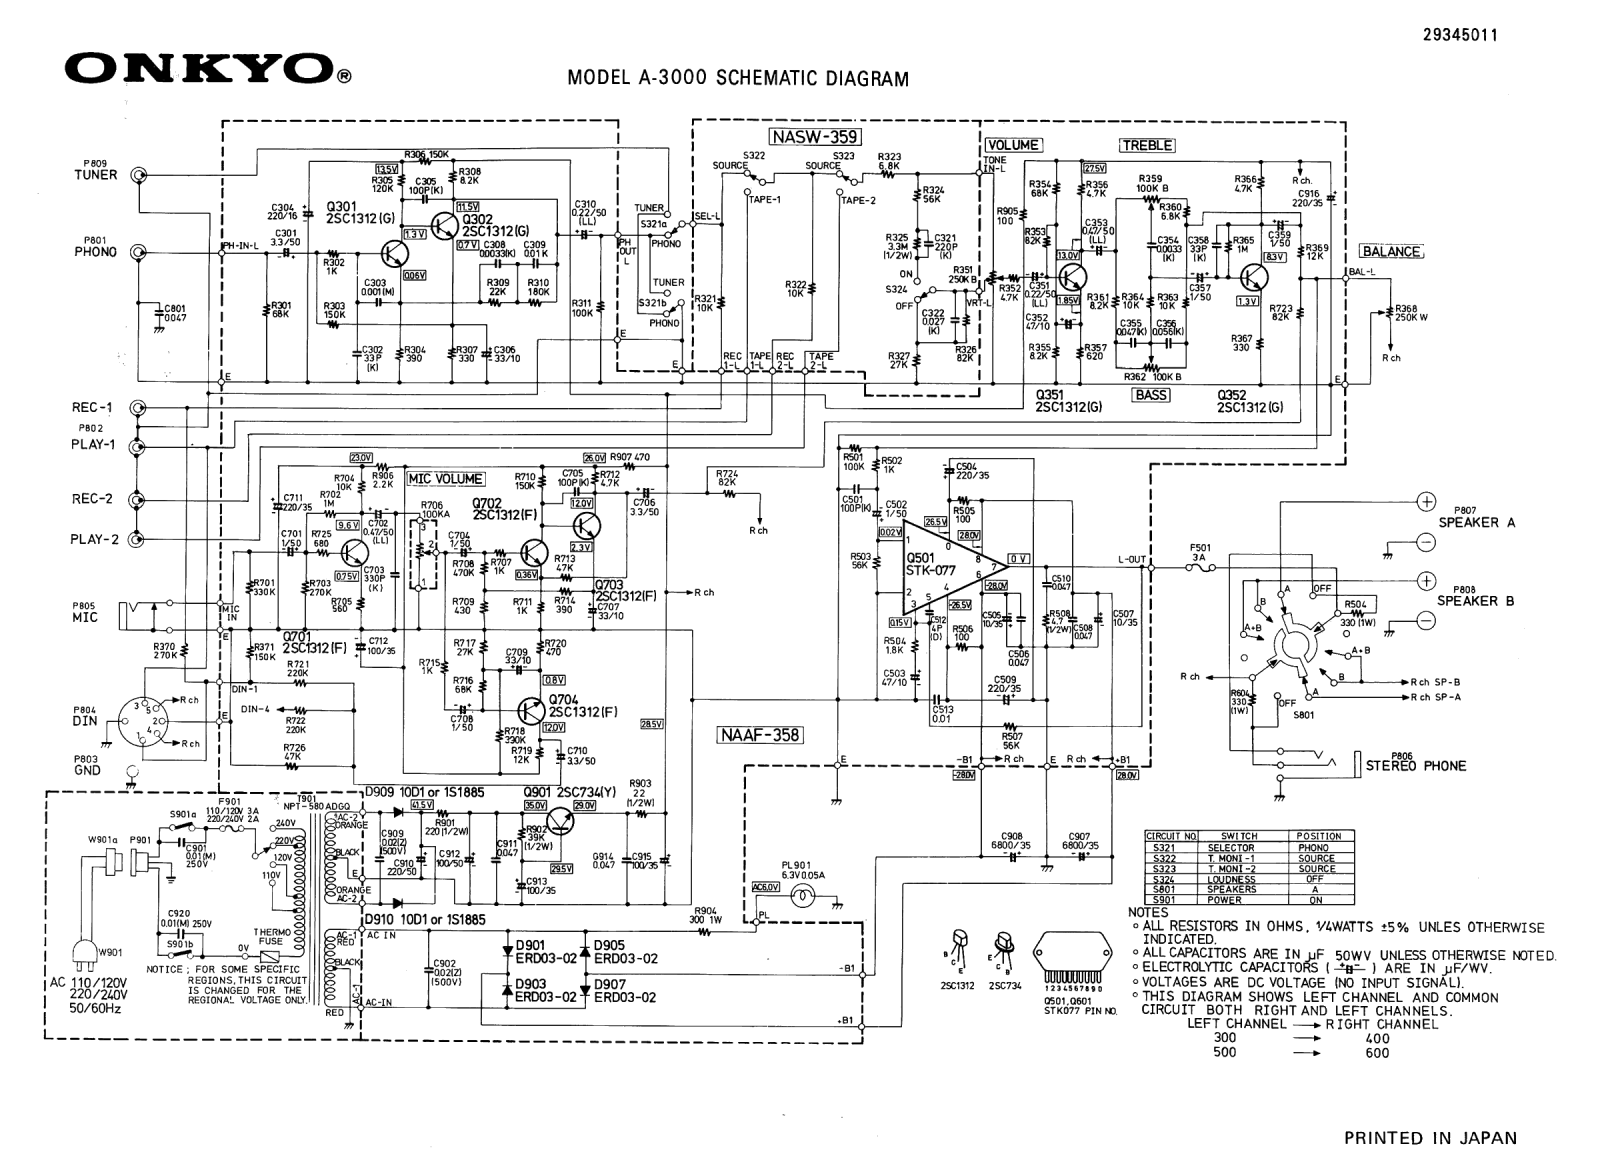 Onkyo A-3000 Schematic